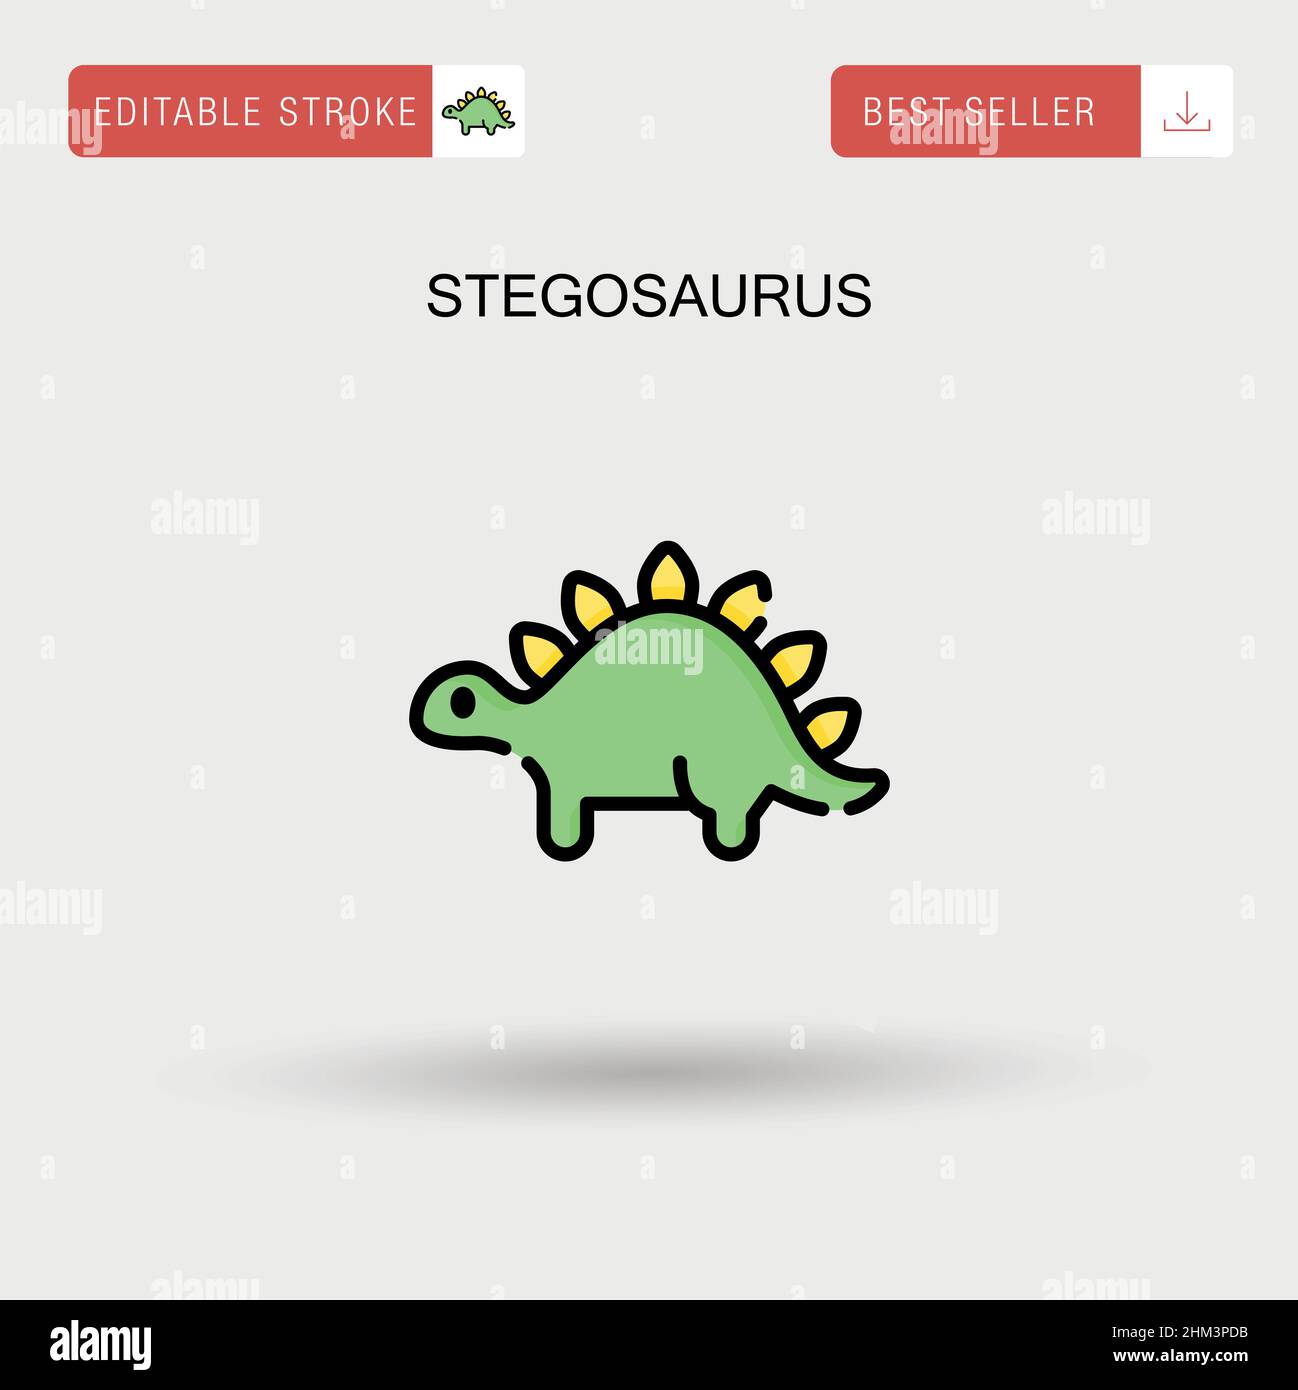 Stegosaurus Simple vector icon. Stock Vector